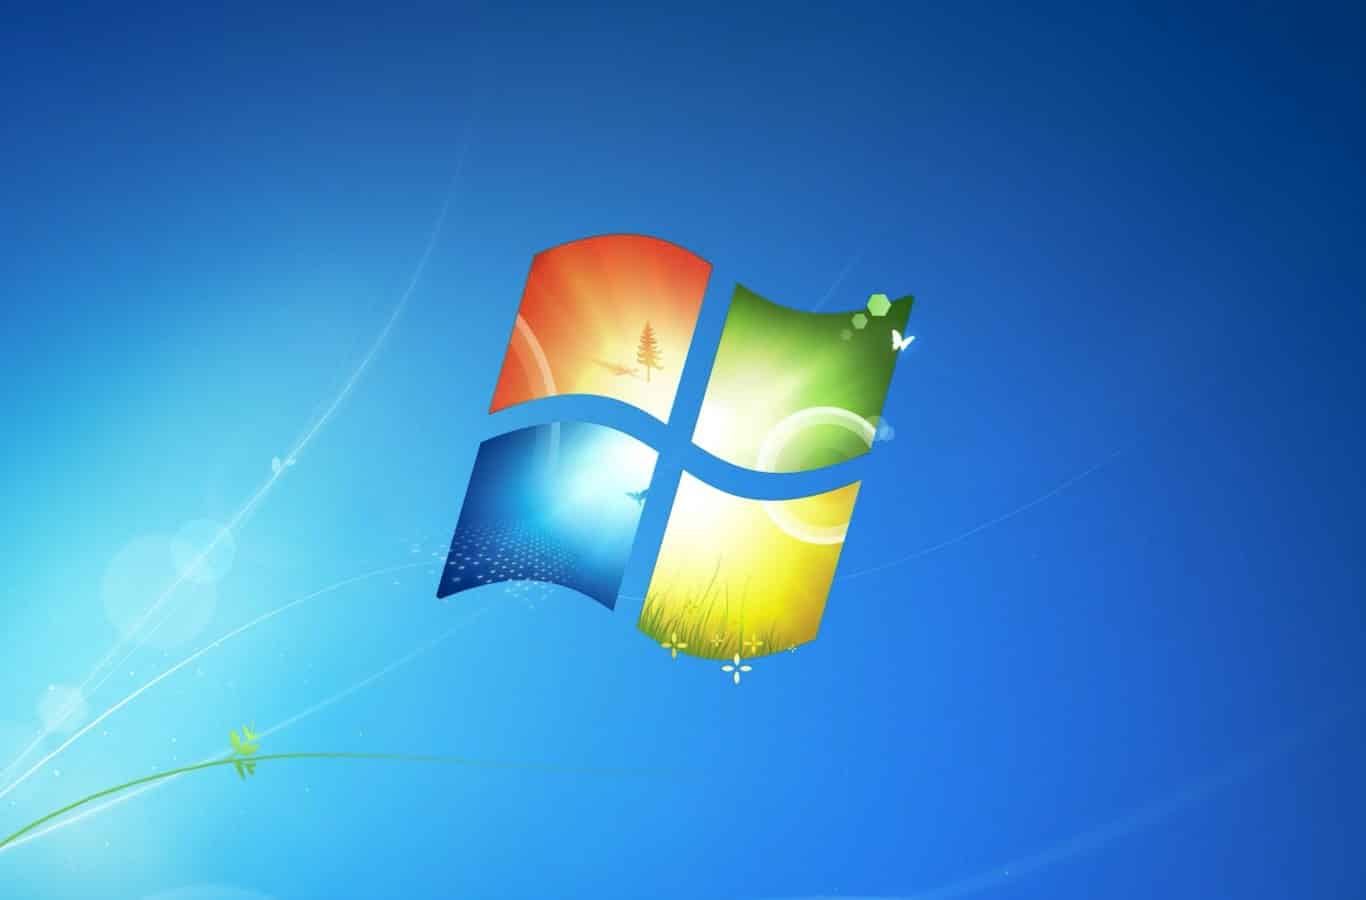 sistema operativo windows 7 estudiantes ingenieria carpetas archivos directorios